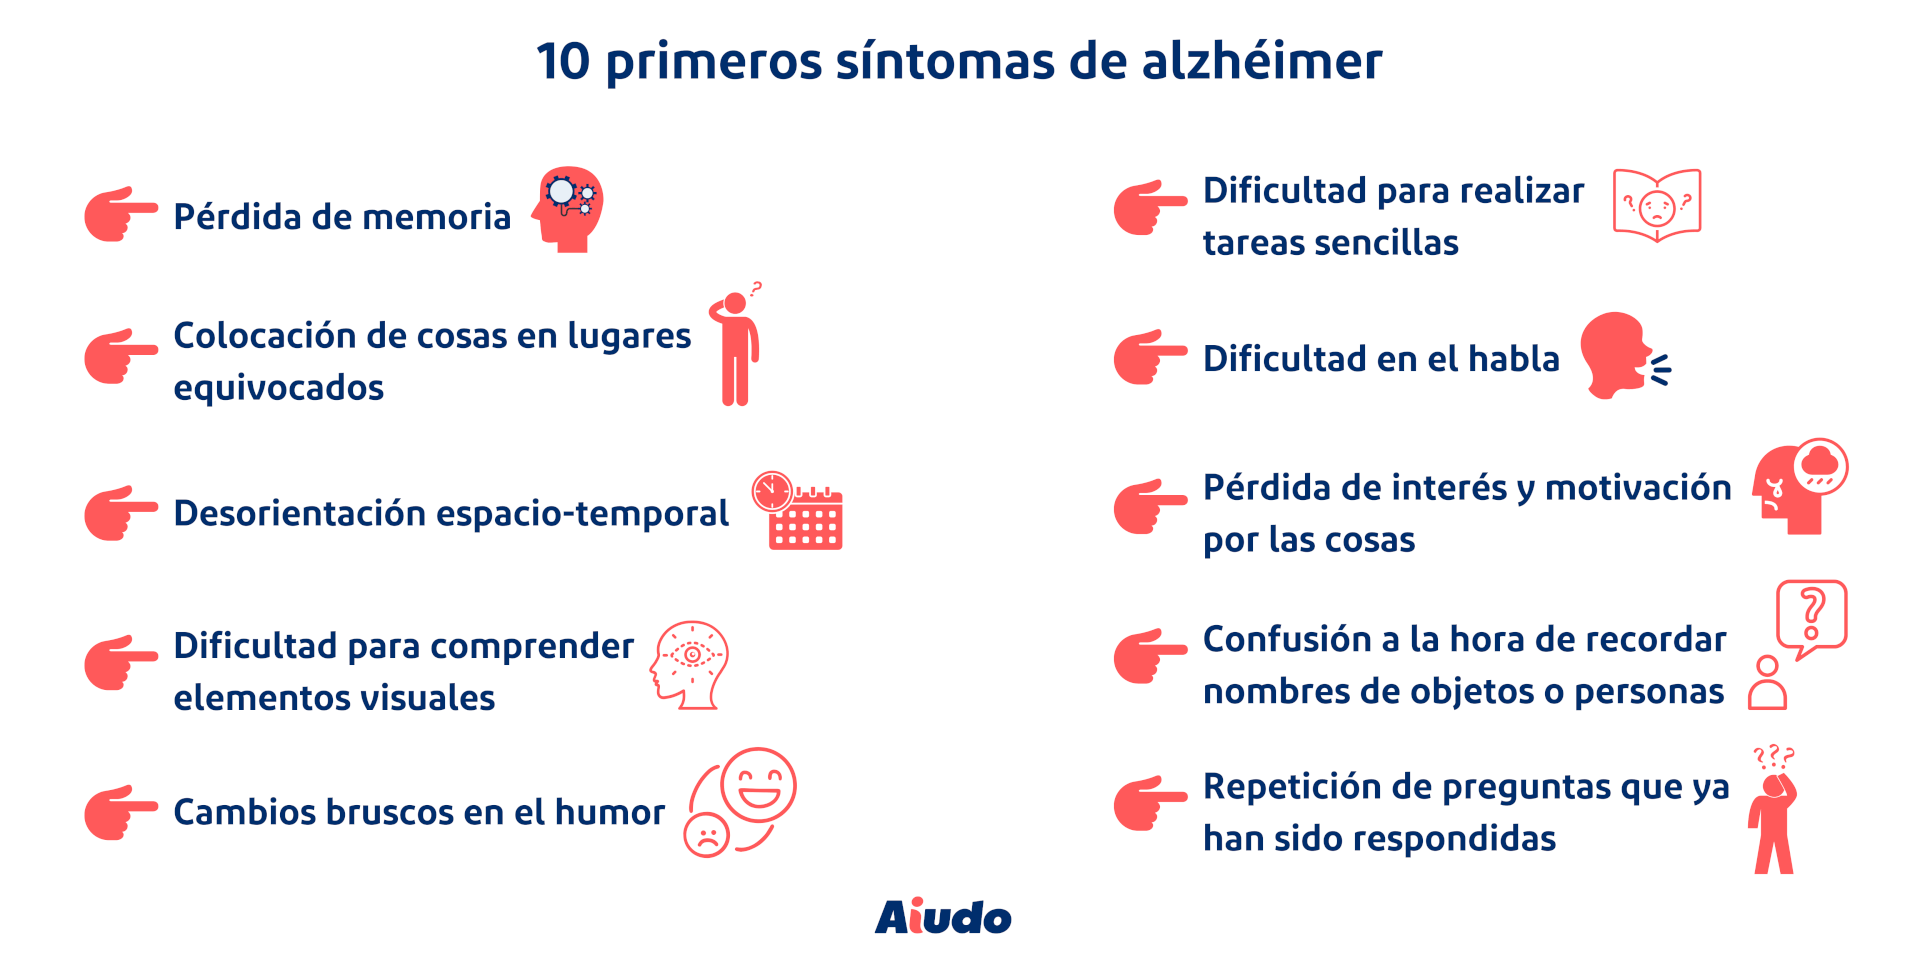 Una infografía con los 10 primeros síntomas del alzhéimer